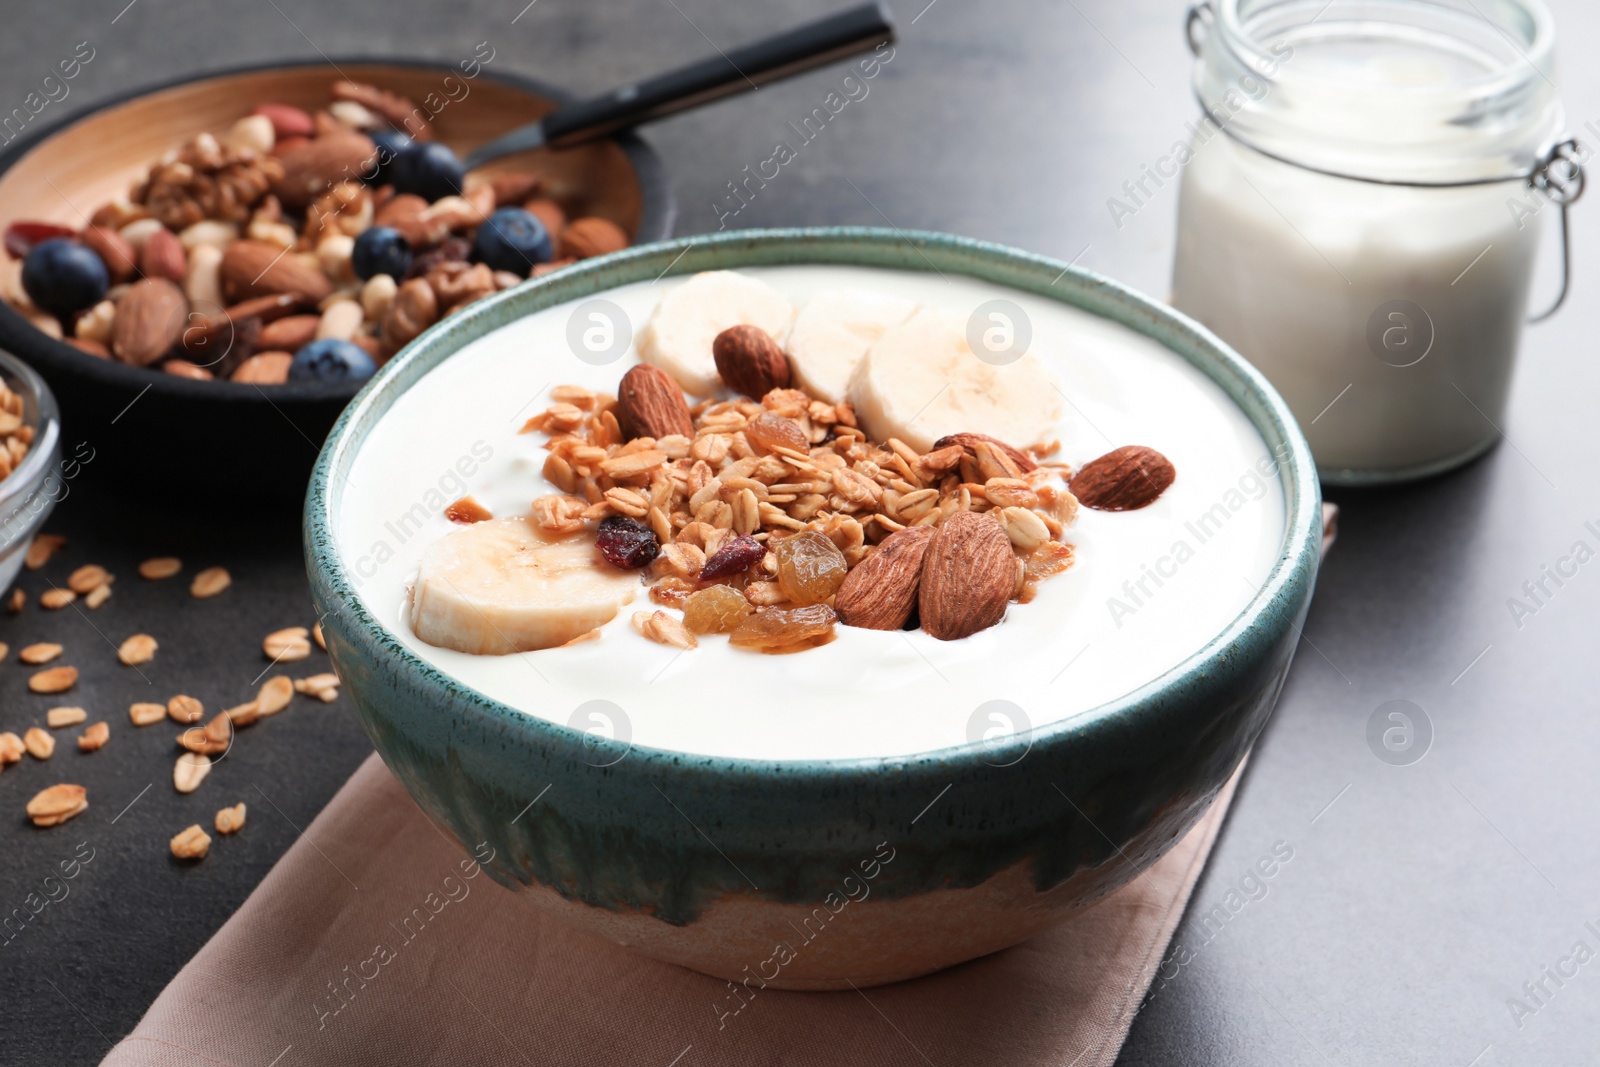 Photo of Bowl with yogurt, banana and granola on table